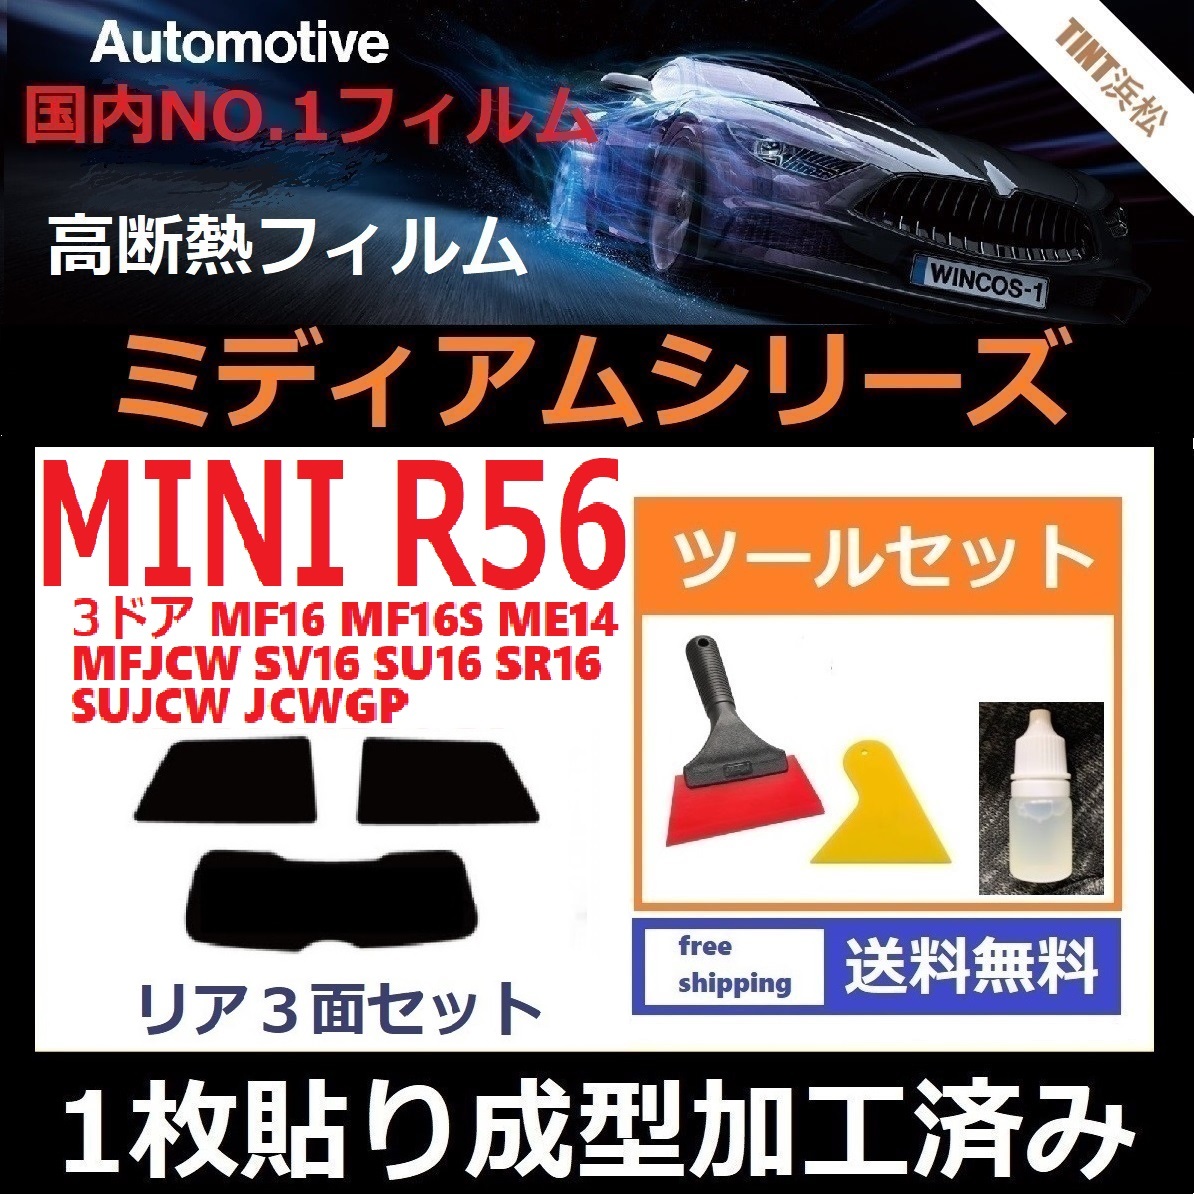 １枚貼り成型加工済みフィルム MINI ミニ 3ドア(R56系 MF16 ME14 SU16 他)【WINCOS ミディアムシリーズ】 ツールセット付き ドライ成型